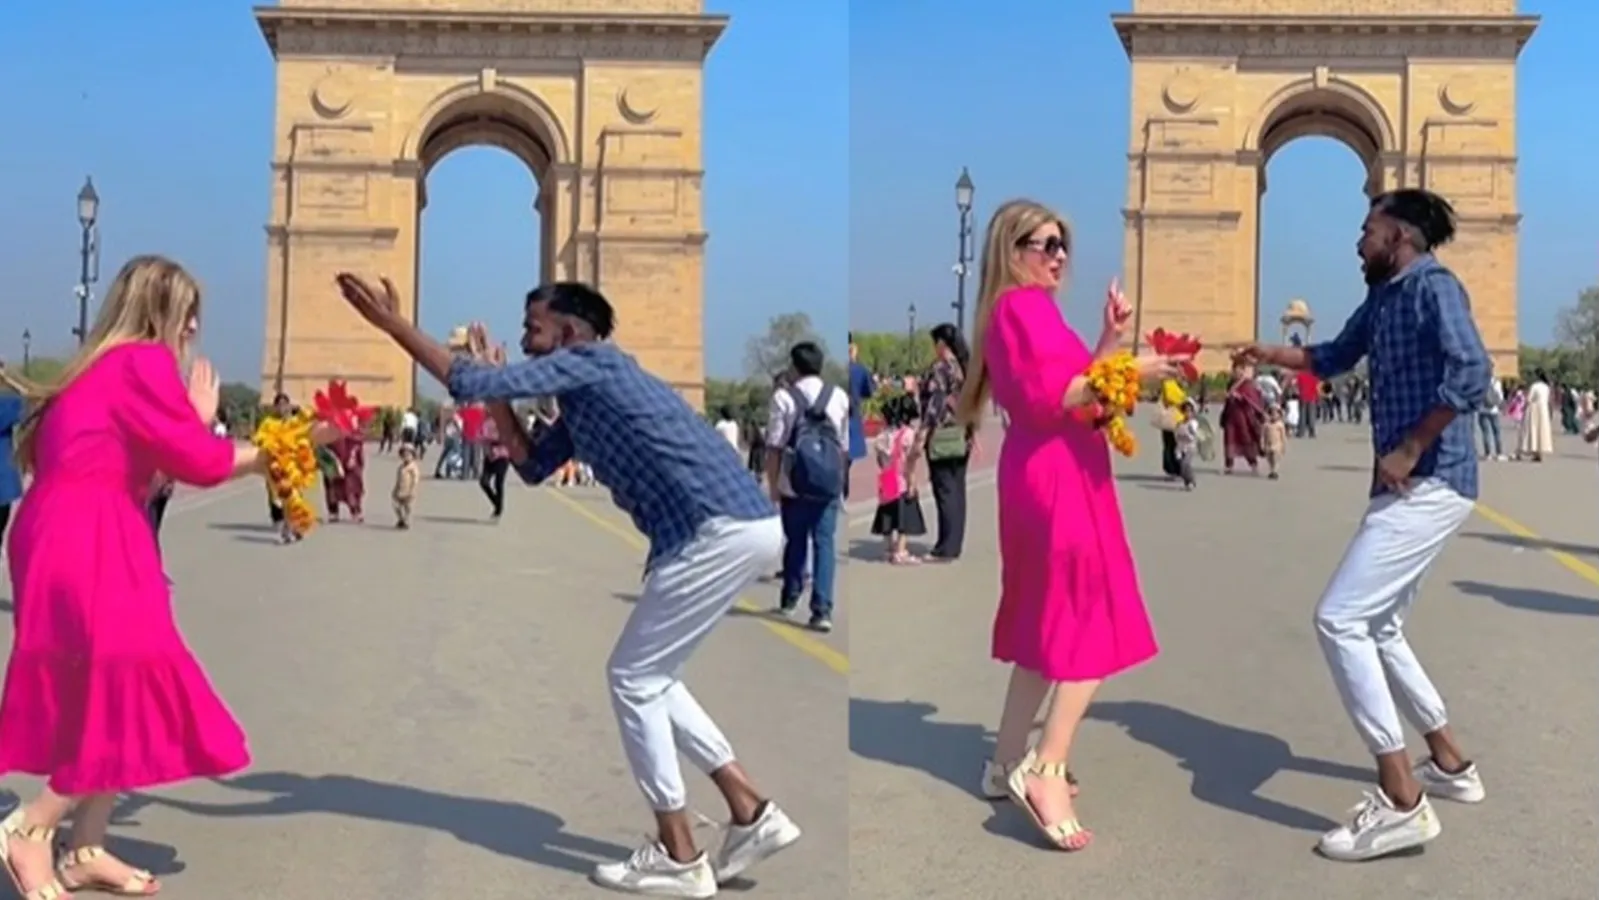 Russian Girl Dance Video: रशियन लड़की ने इंडिया गेट के सामने भोजपुरी गाने पर लगाए जमकर ठुमके, देखने वाले झुमने